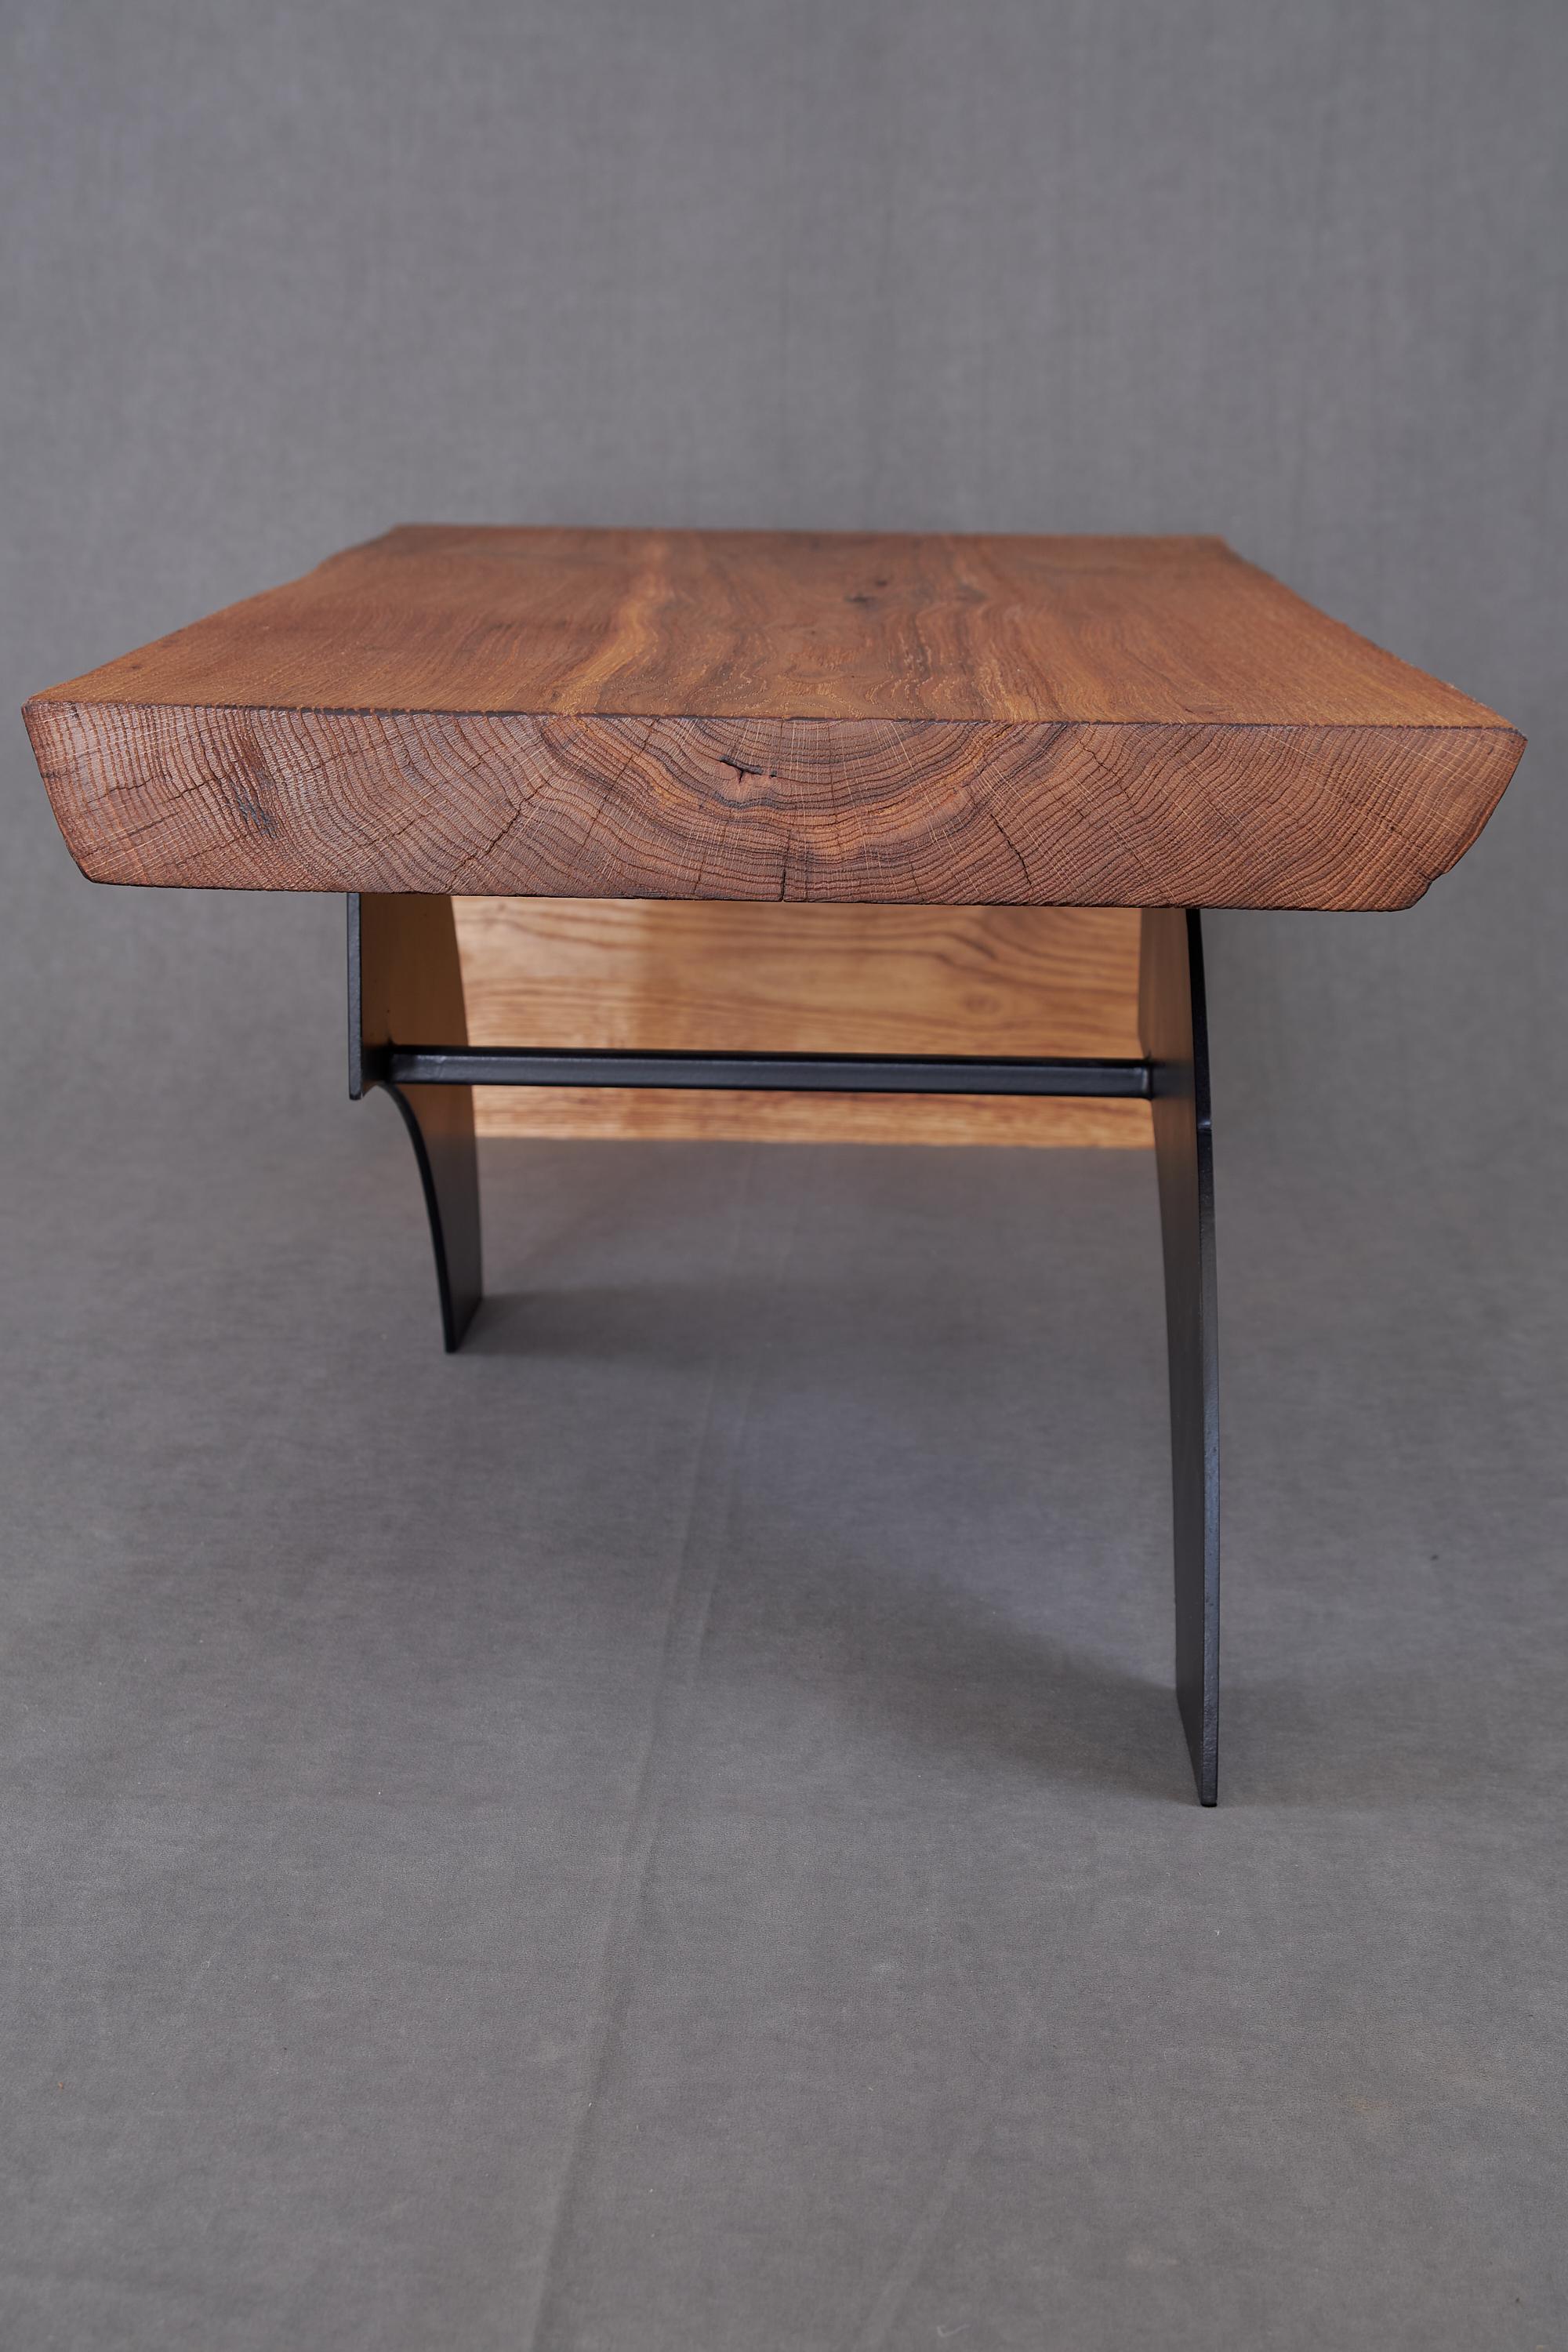 Massive oak Coffee Table, Contemporary Original Design, Logniture For Sale 10